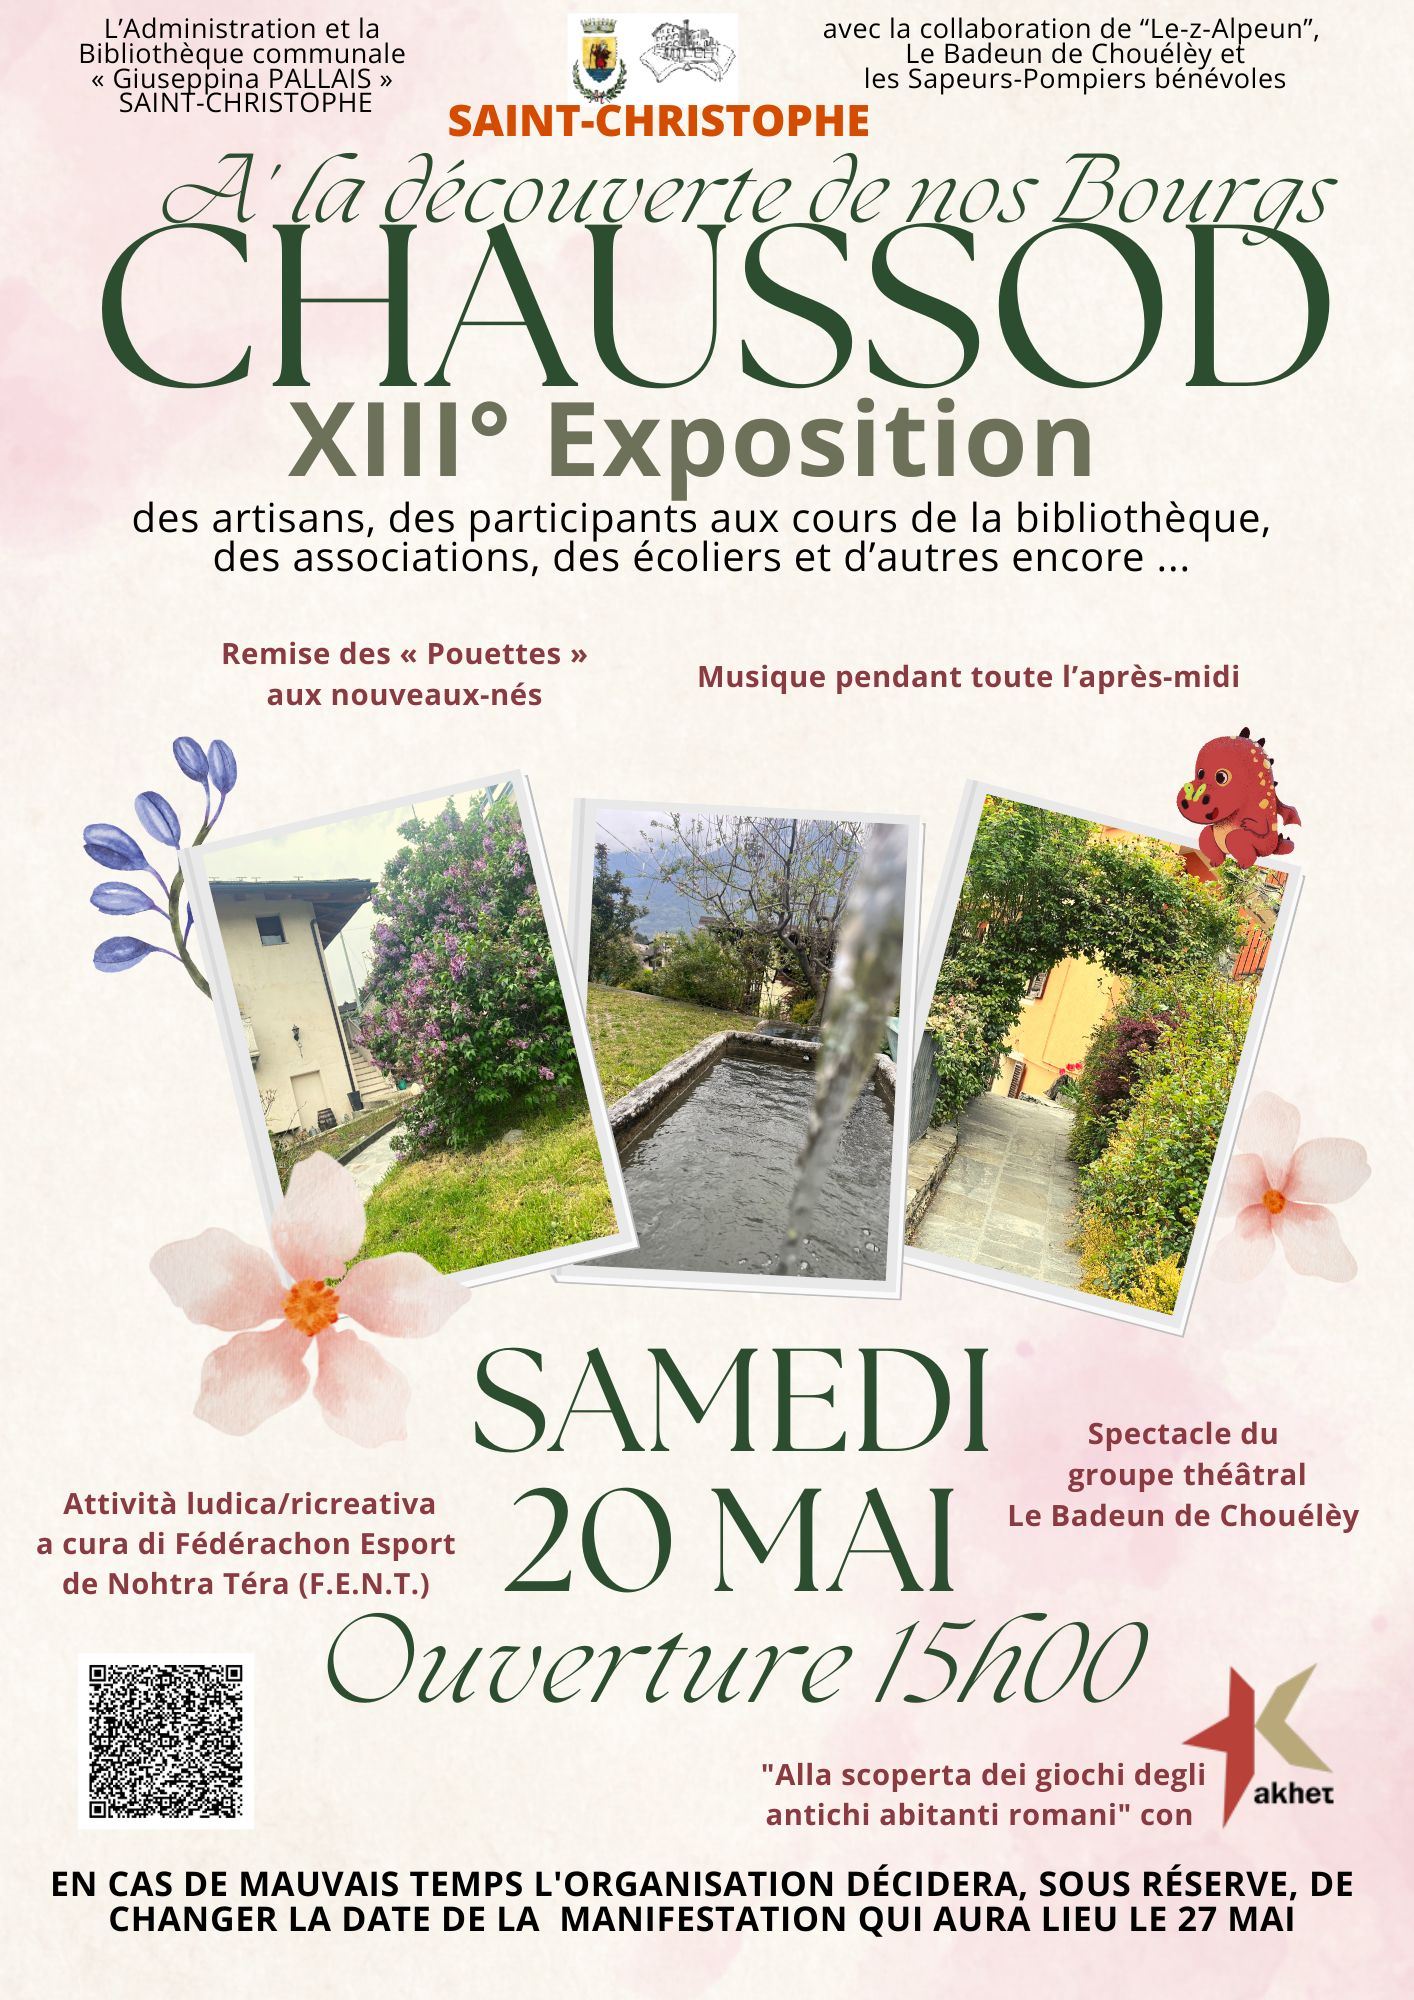 Biblioteca di Saint-Christophe: rinviato il pomeriggio alla scoperta di Chaussod